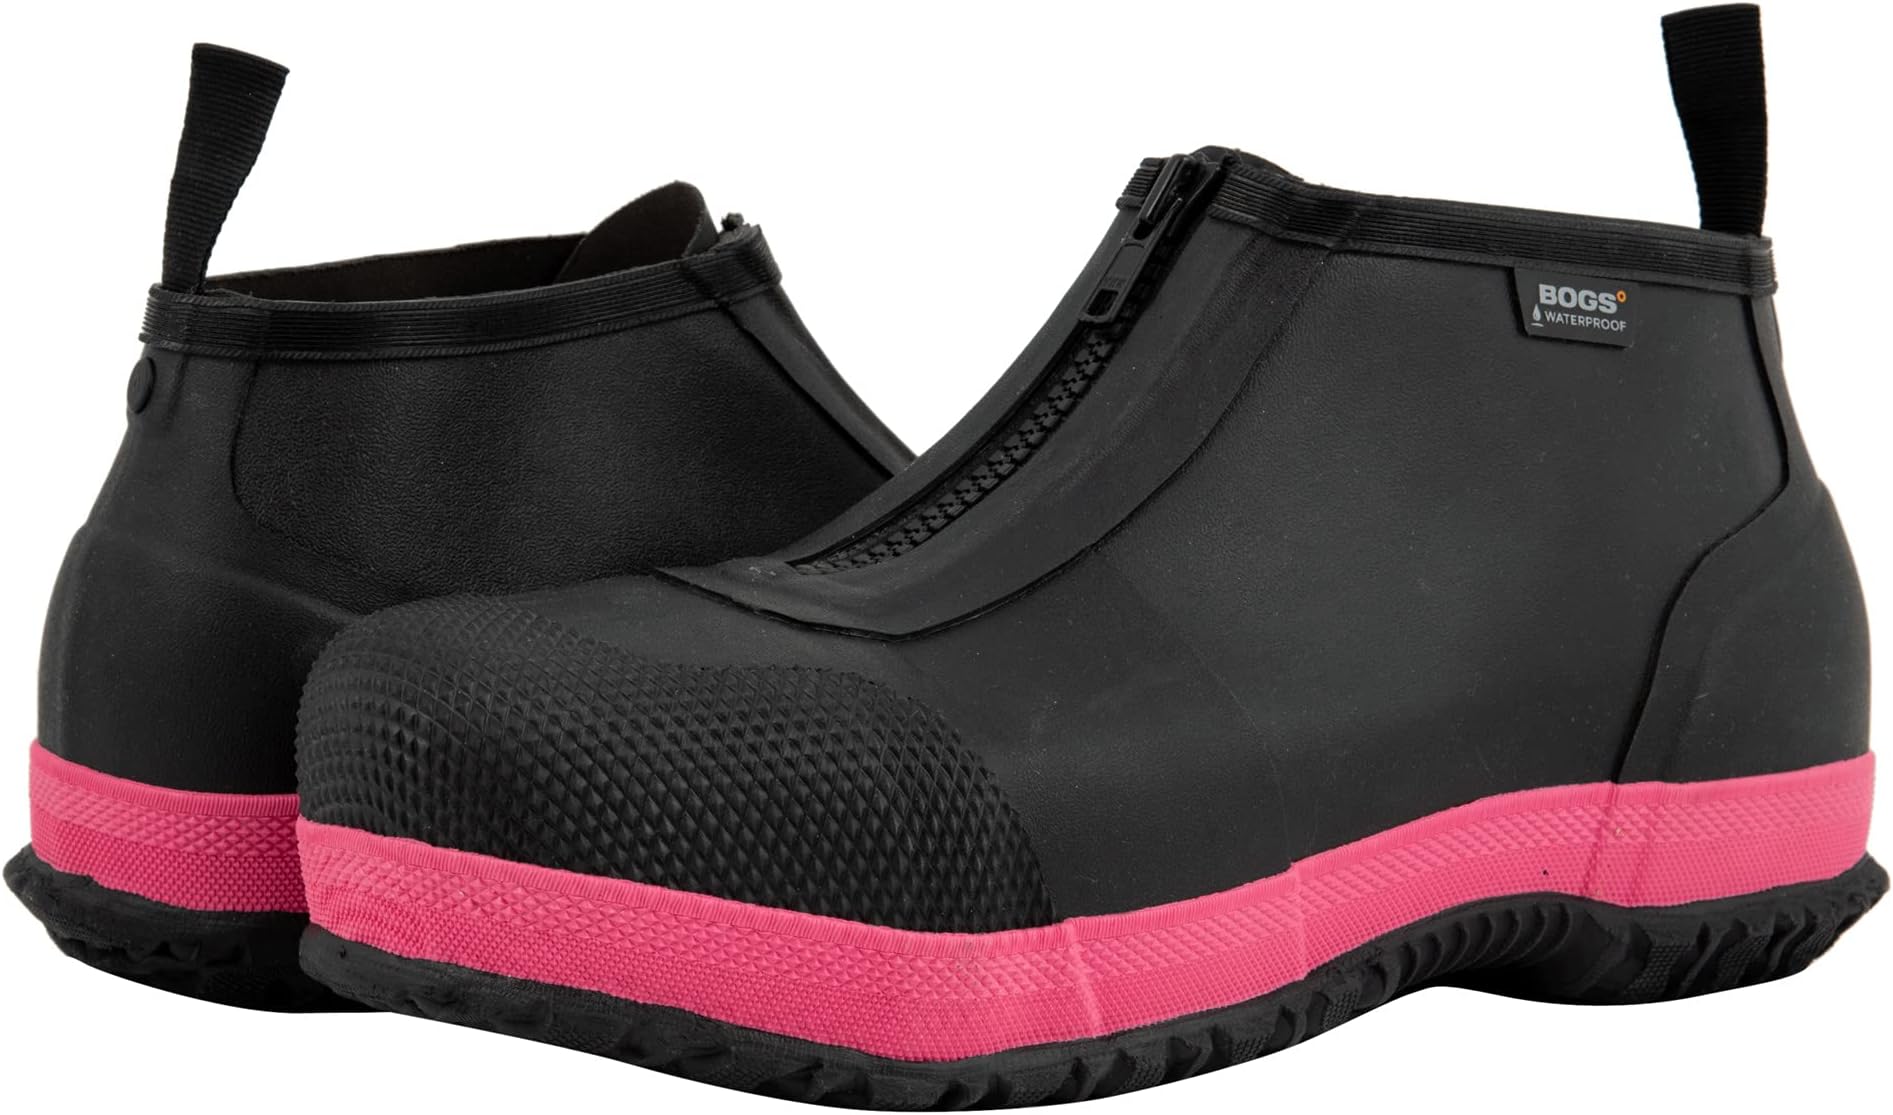 Рабочая обувь с композитным носком Overshoe Zip Composite Safety Toe Bogs, цвет Black Multi рабочая обувь с композитным носком warrior composite toe dan post коричневая кожа